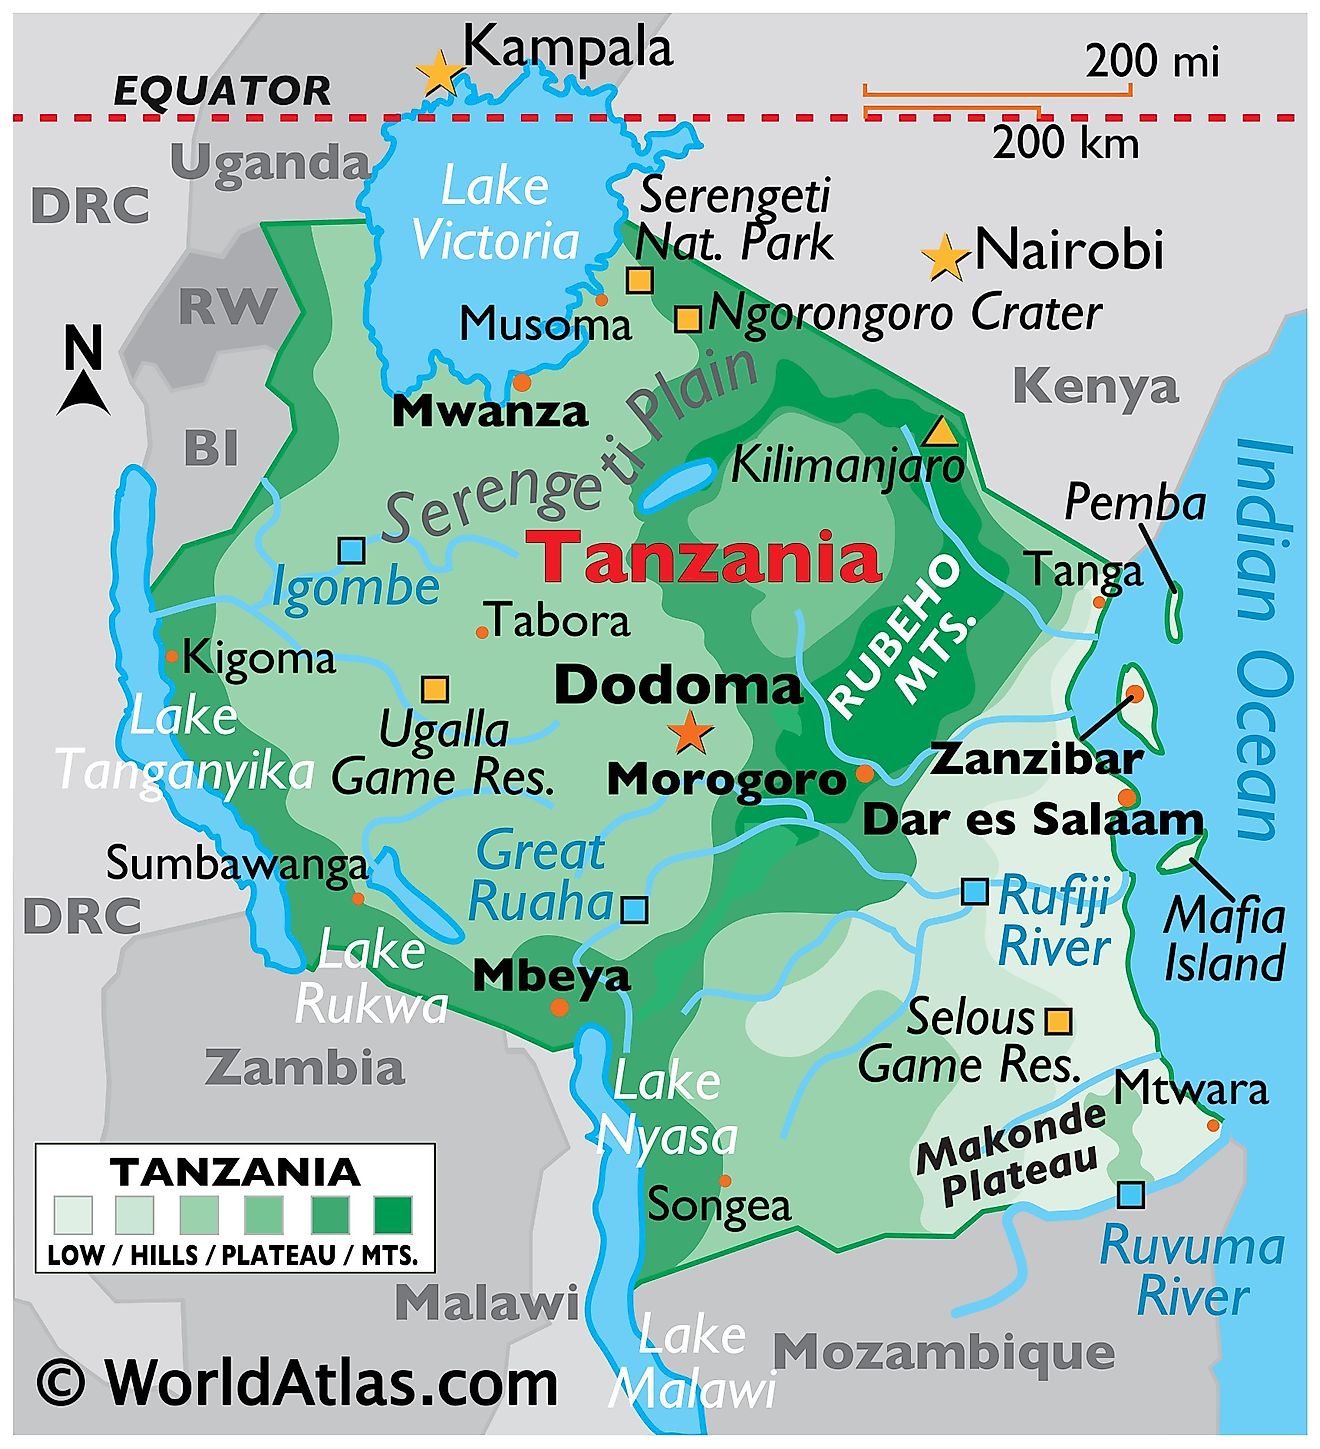 Mapa físico de Tanzania con los límites estatales y las principales características físicas como cadenas montañosas, ríos, lagos, parques nacionales, etc.